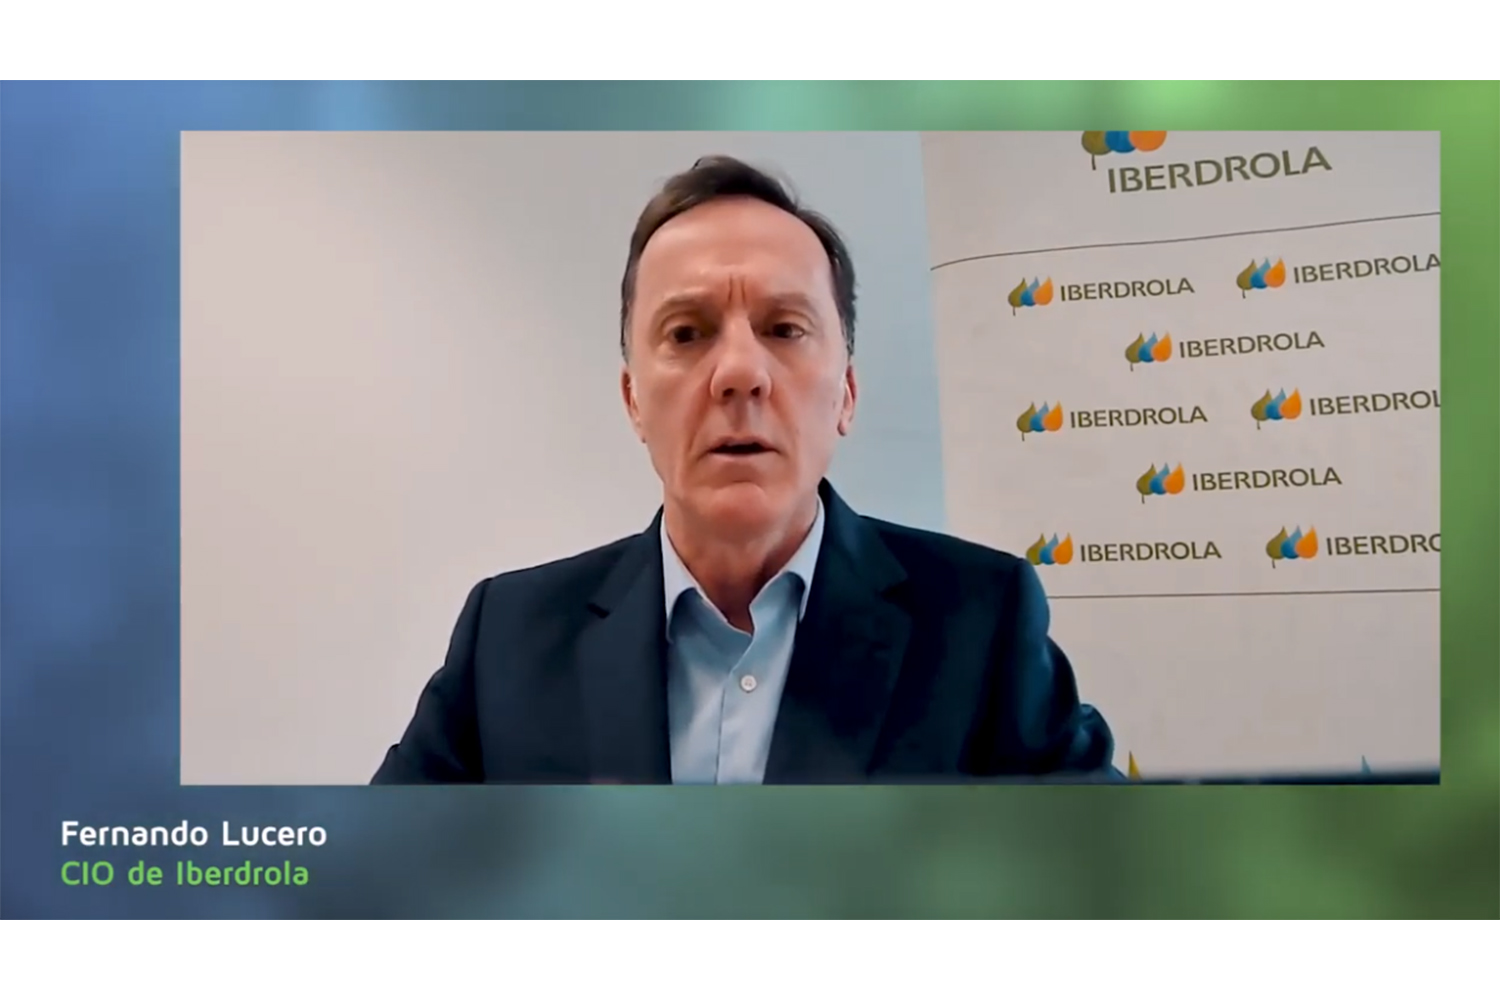 Fernando Lucero, CEO de Iberdrola en la entrega de premios de enertic